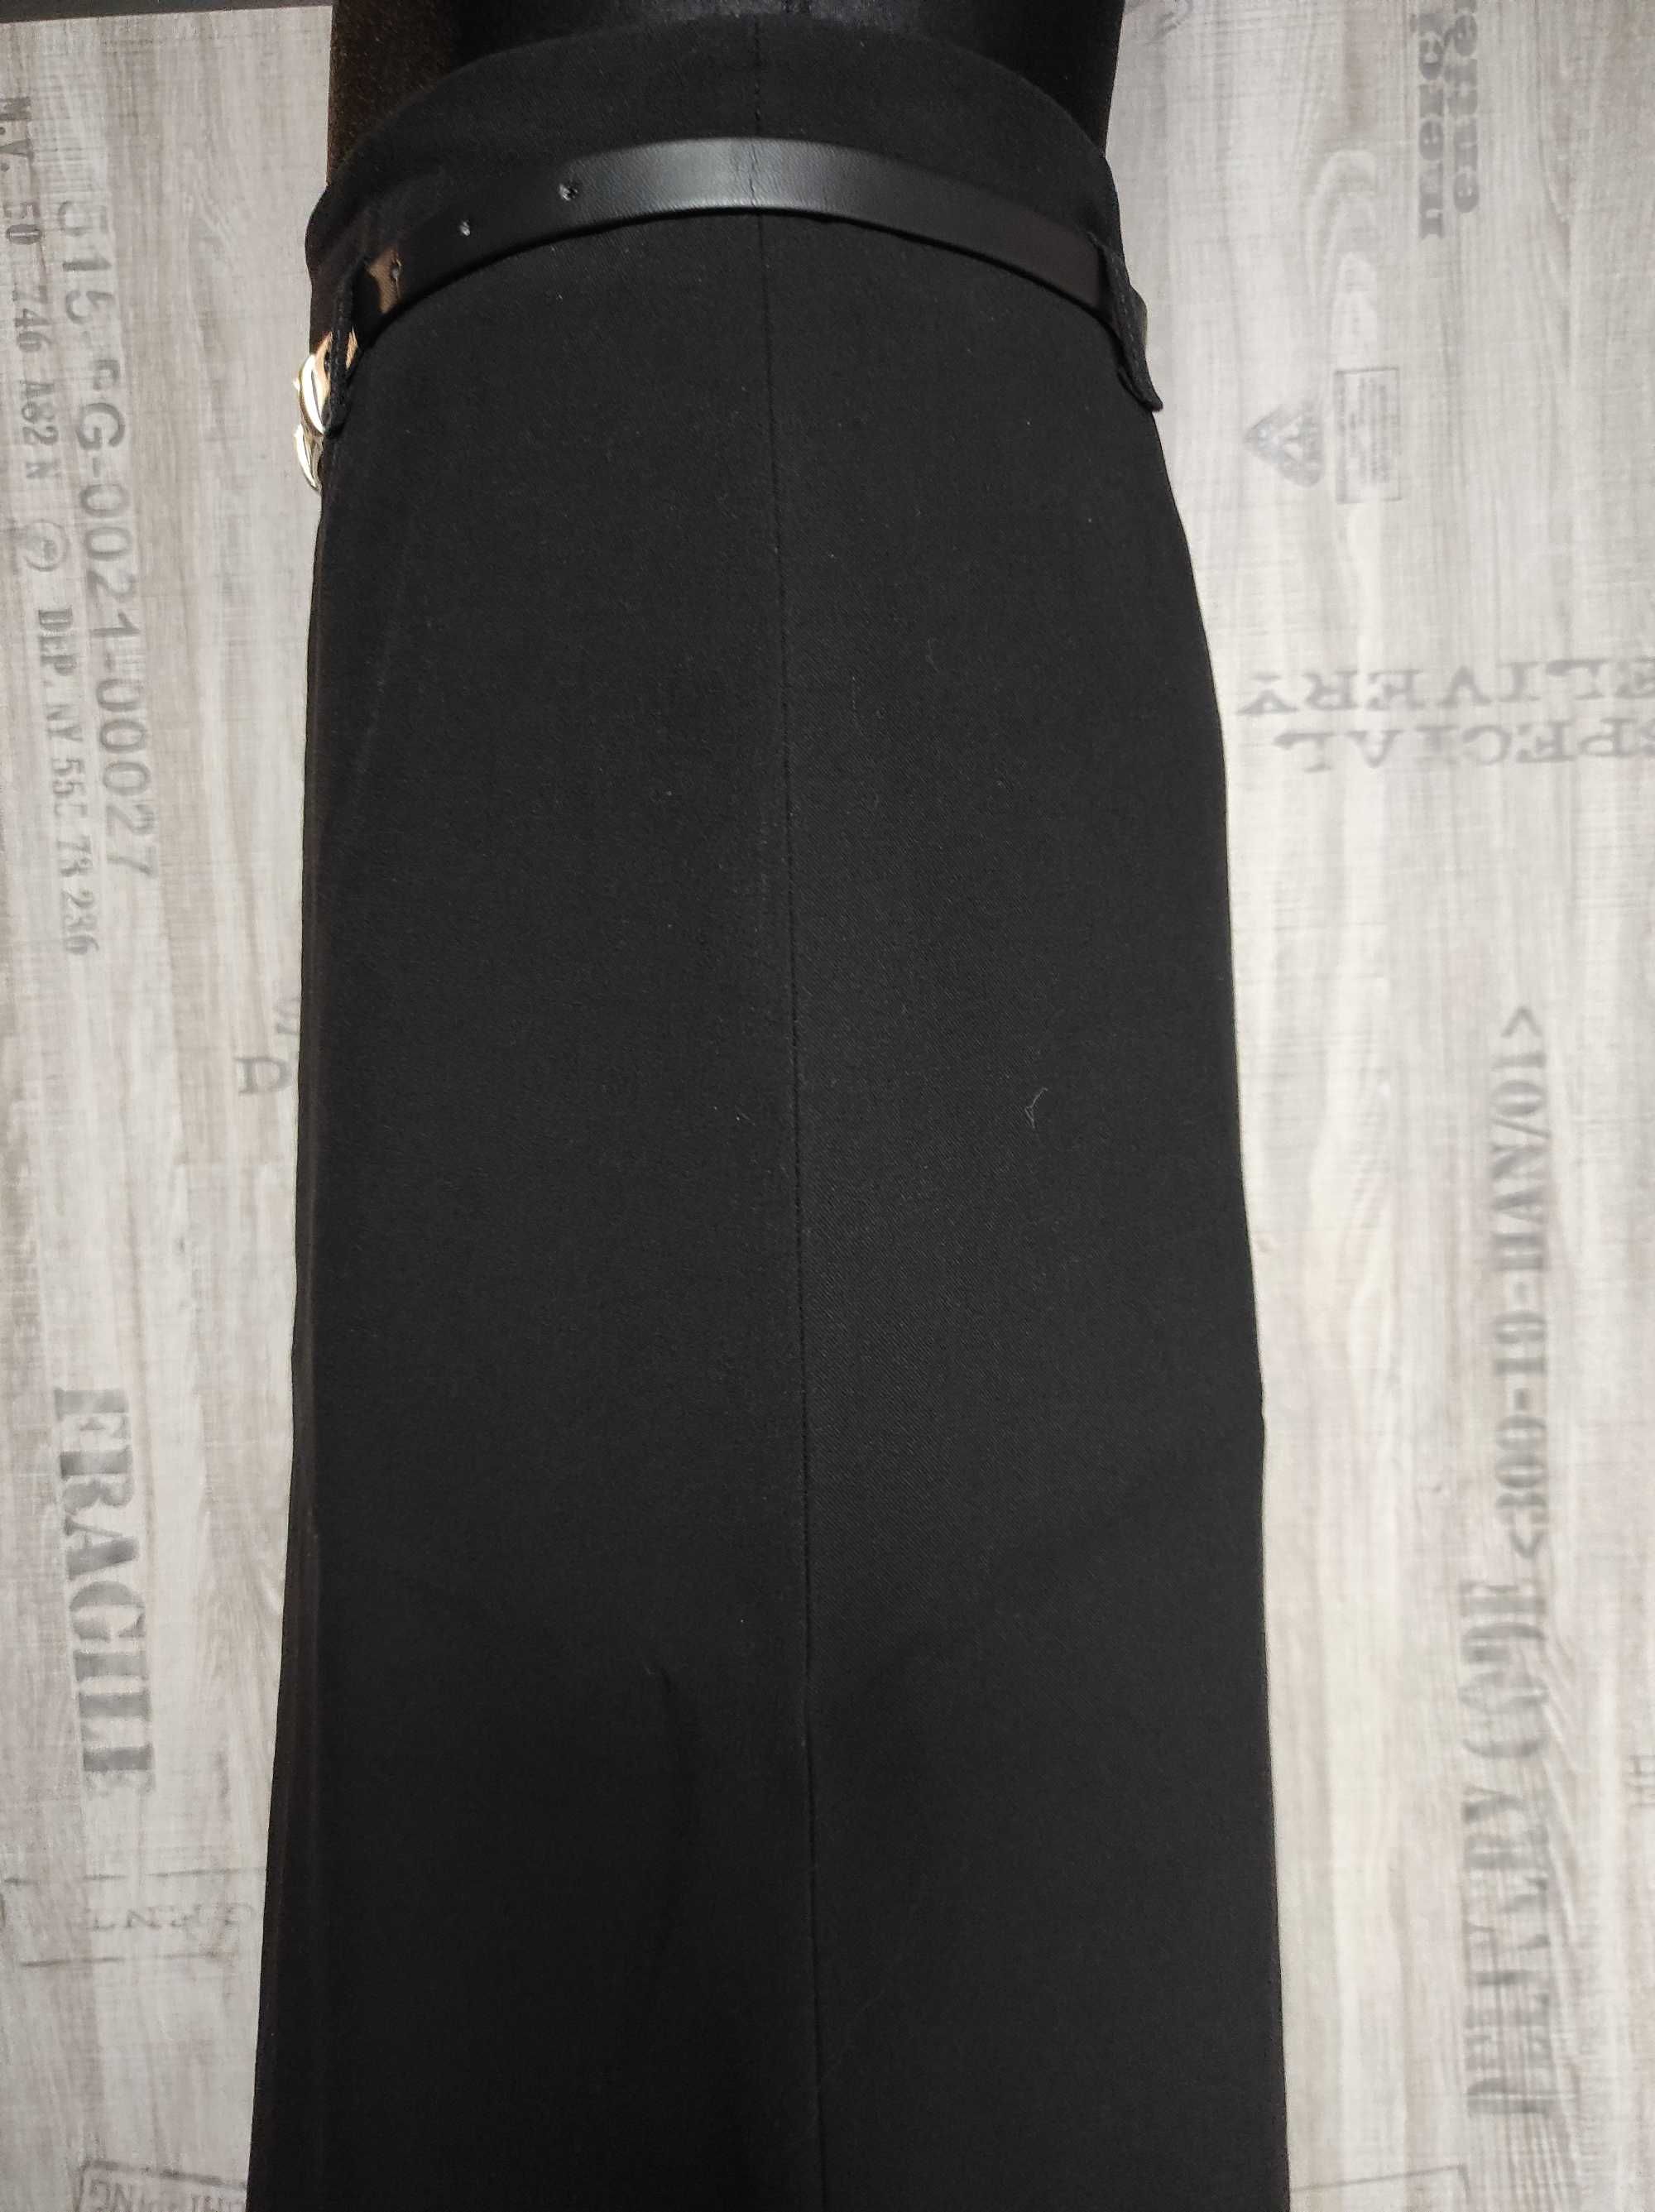 Spódnica damska, czarna, rozmiar 40, produkt polski